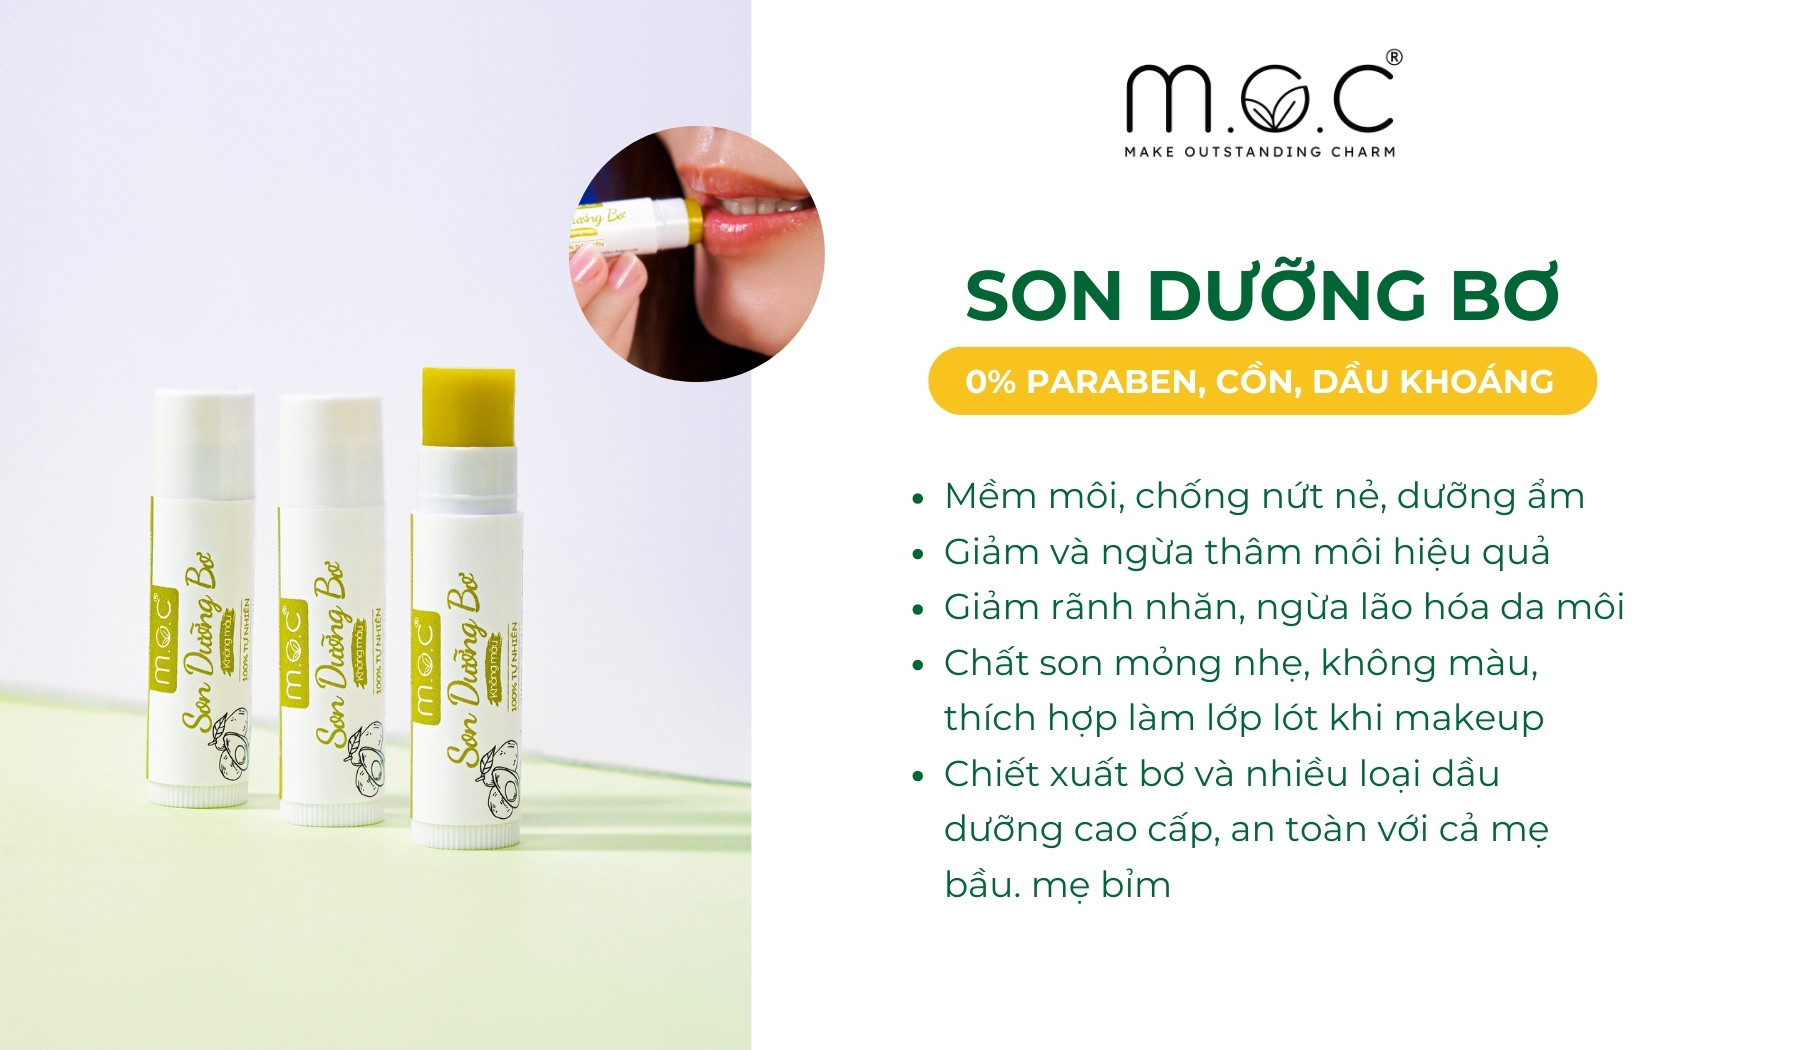 Son dưỡng bơ không màu M.O.C mềm môi, giảm và ngừa thâm môi hiệu quả từ bơ và dầu dưỡng cao cấp